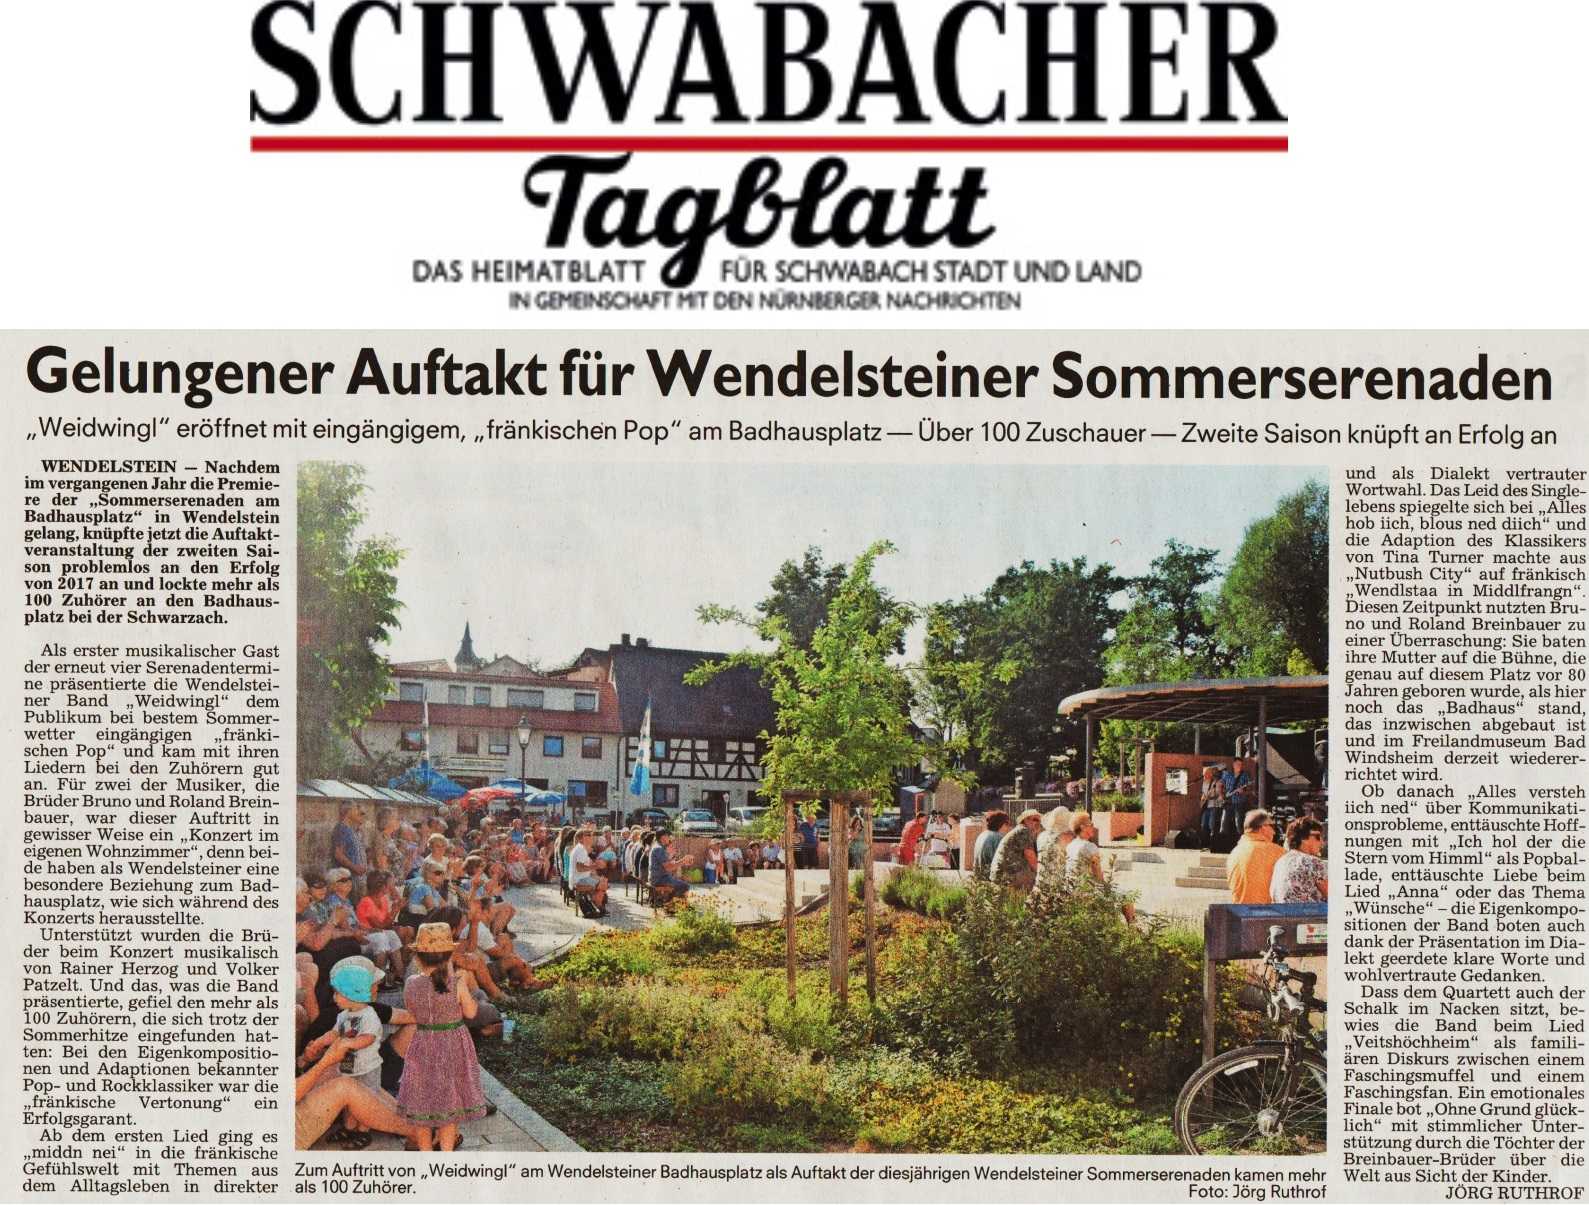 Gelungener Auftakt für Wendelsteiner Sommerserenaden - Schwabacher Tagblatt